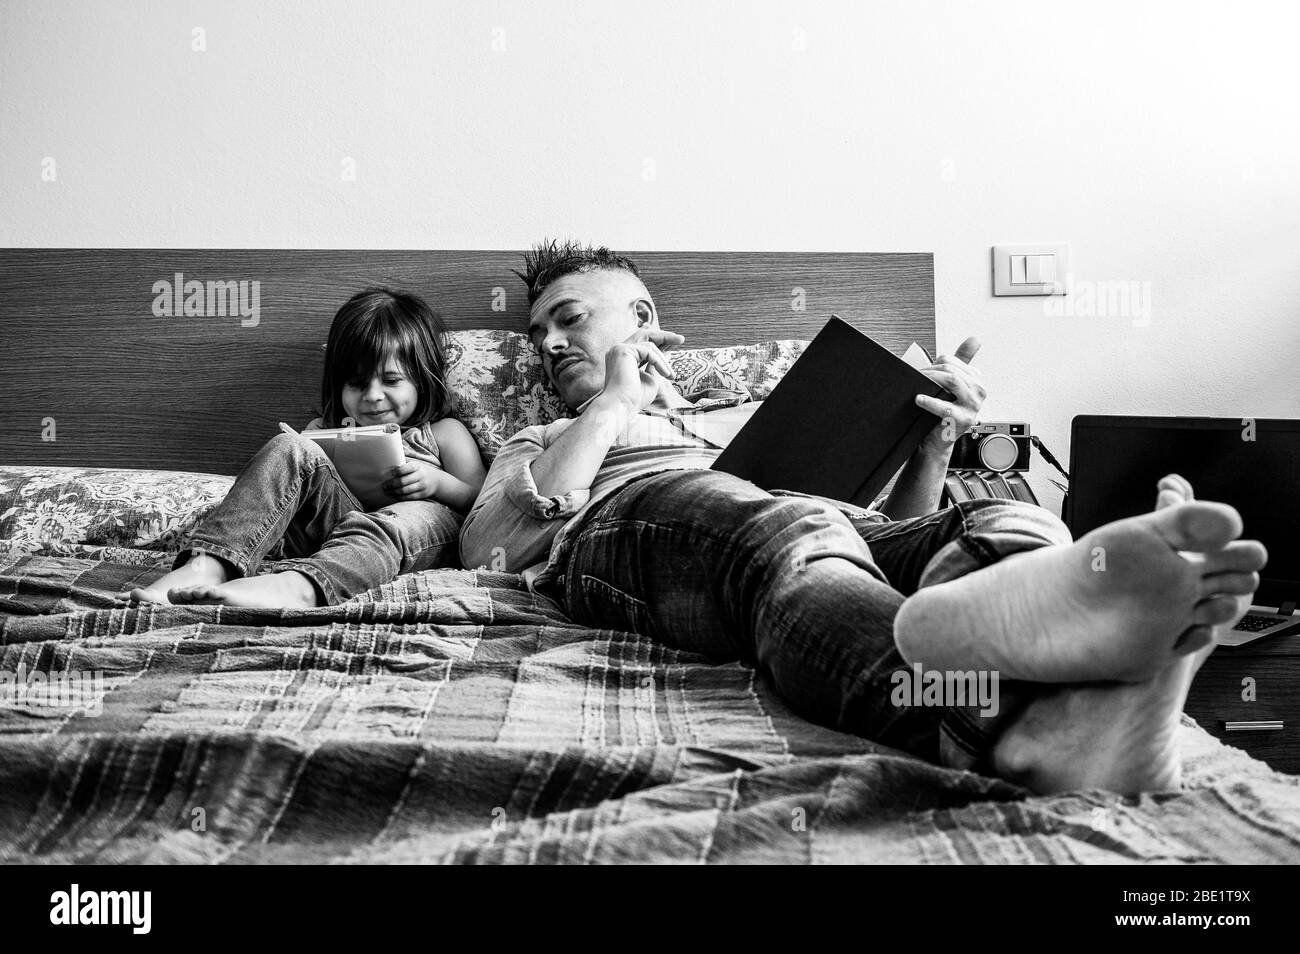 Padre e figlia in abiti denim casual sono seduti a letto insieme. La ragazza che ha divertimento di scrittura o disegno mentre il padre la guarda. Infanzia Foto Stock